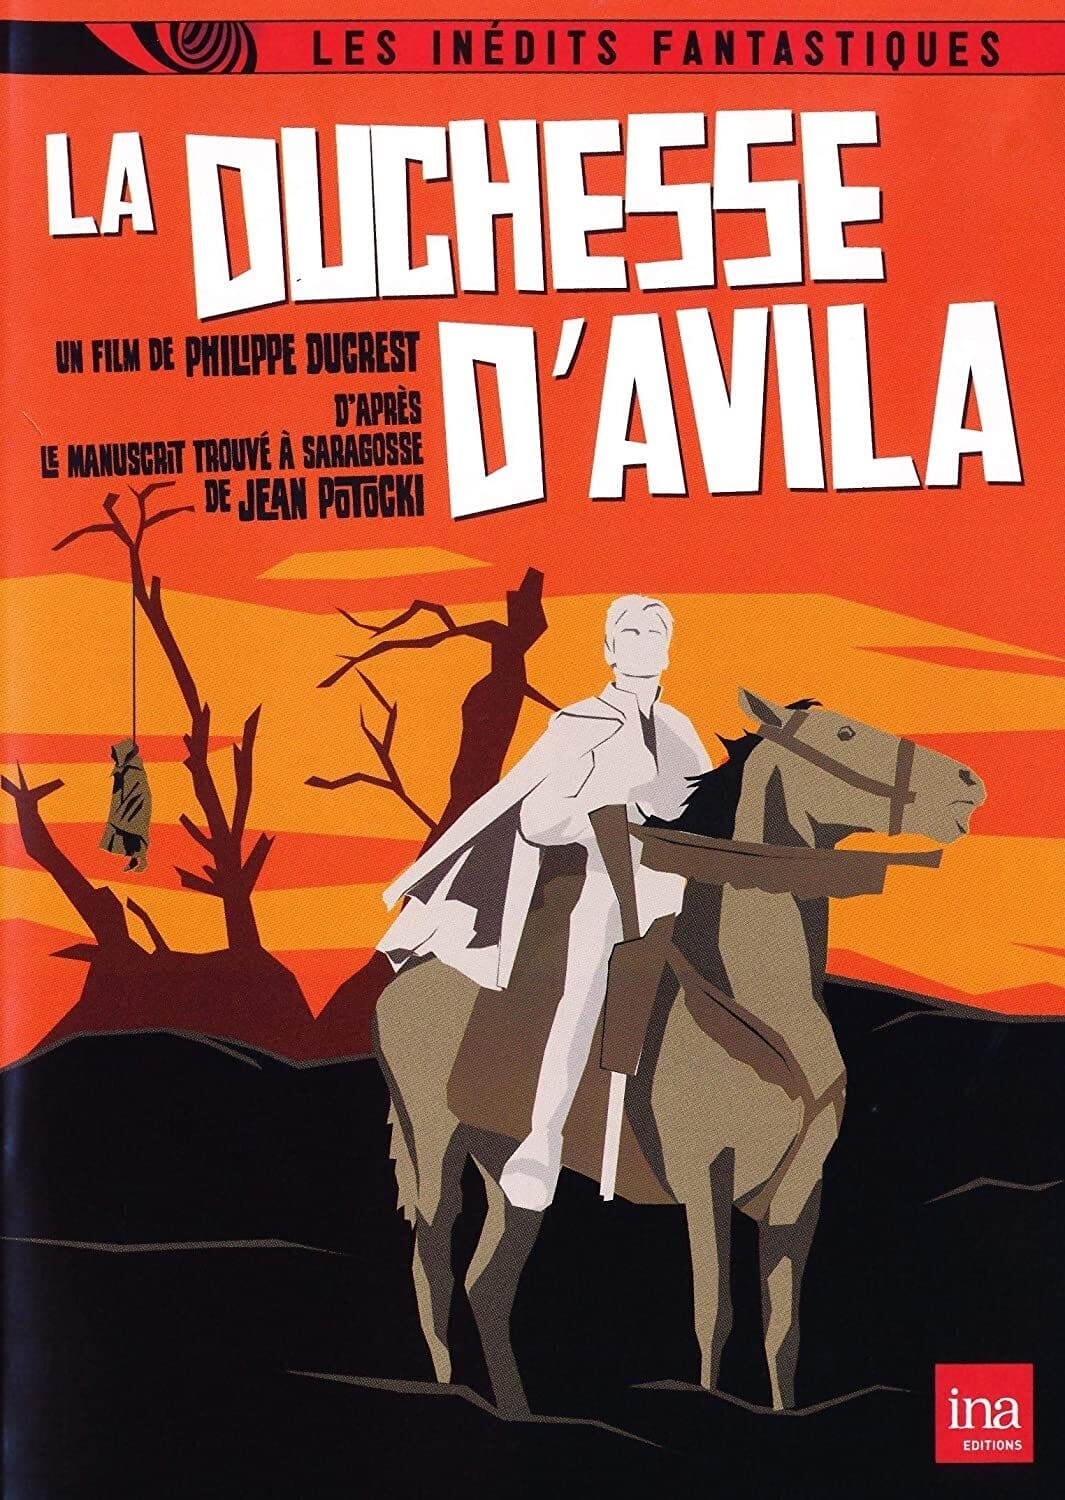 La Duchesse d'Avila (1973)